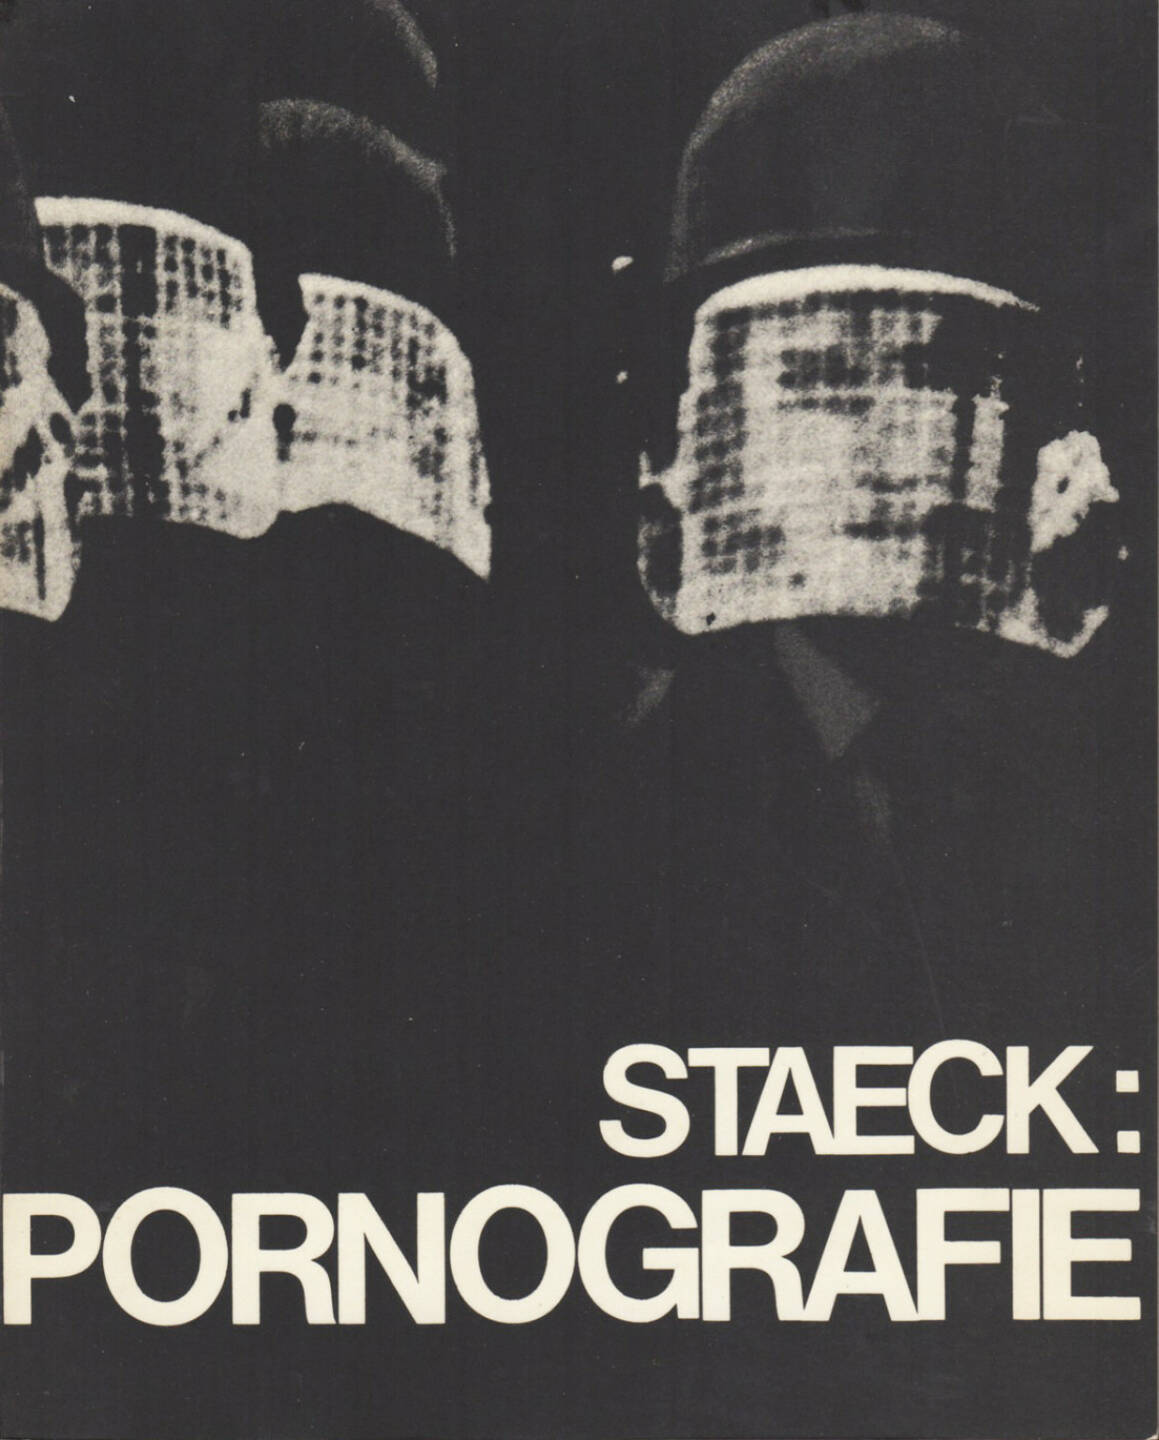 Klaus Staeck - Pornografie, 450-700 Euro, http://josefchladek.com/book/klaus_staeck_-_pornografie